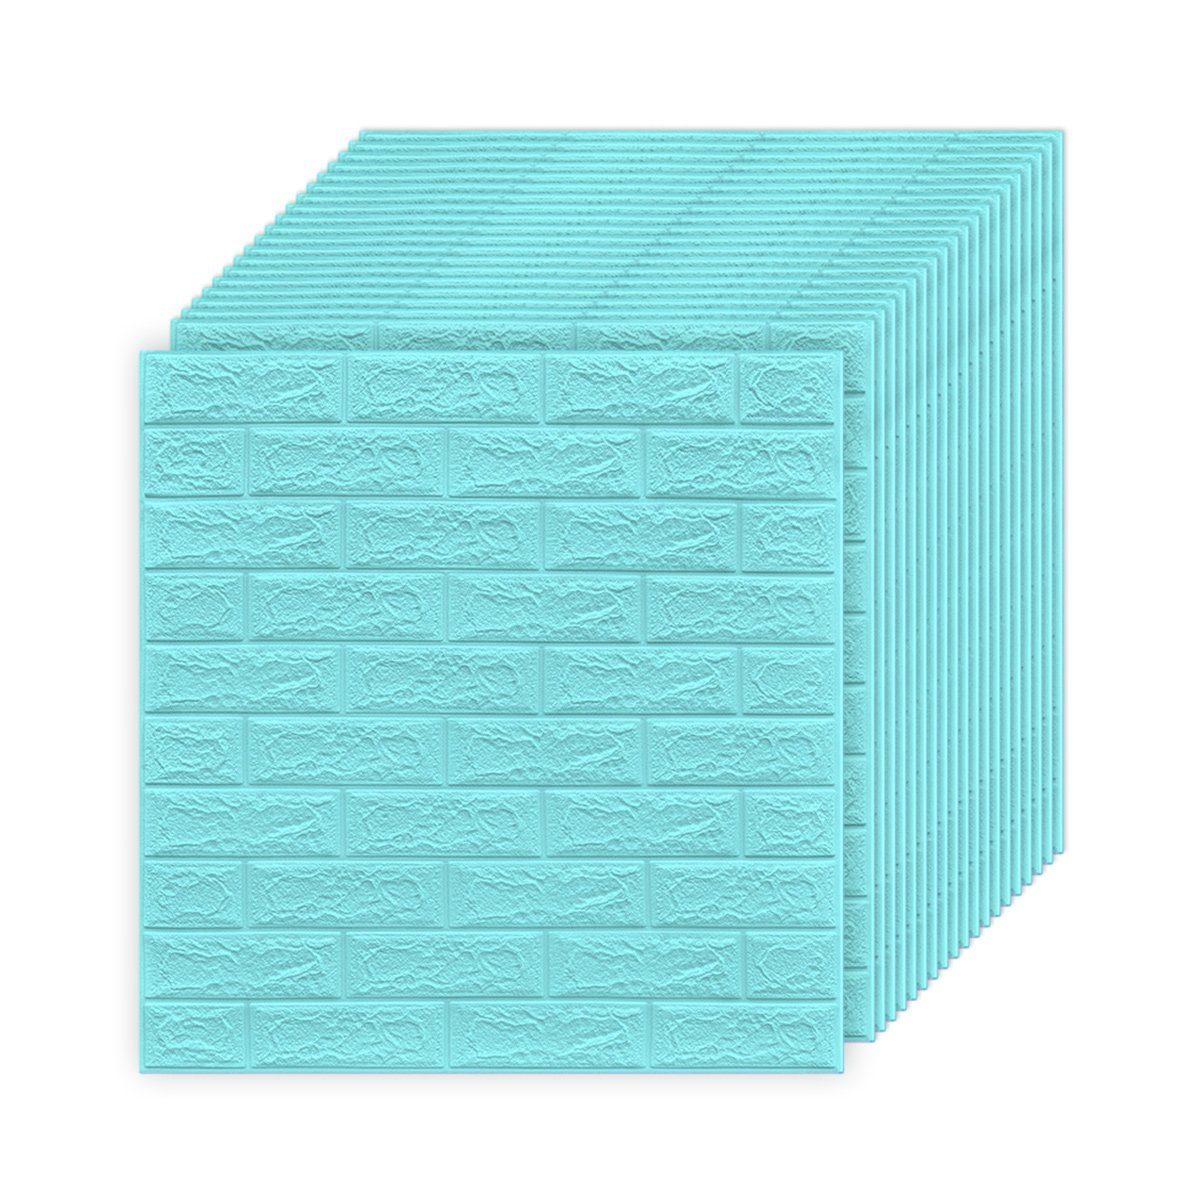 Jormftte Wandtattoo 3D Wandpaneele Selbstklebend,Wandtattoo Küche Ziegelstein für Wanddeko Blau